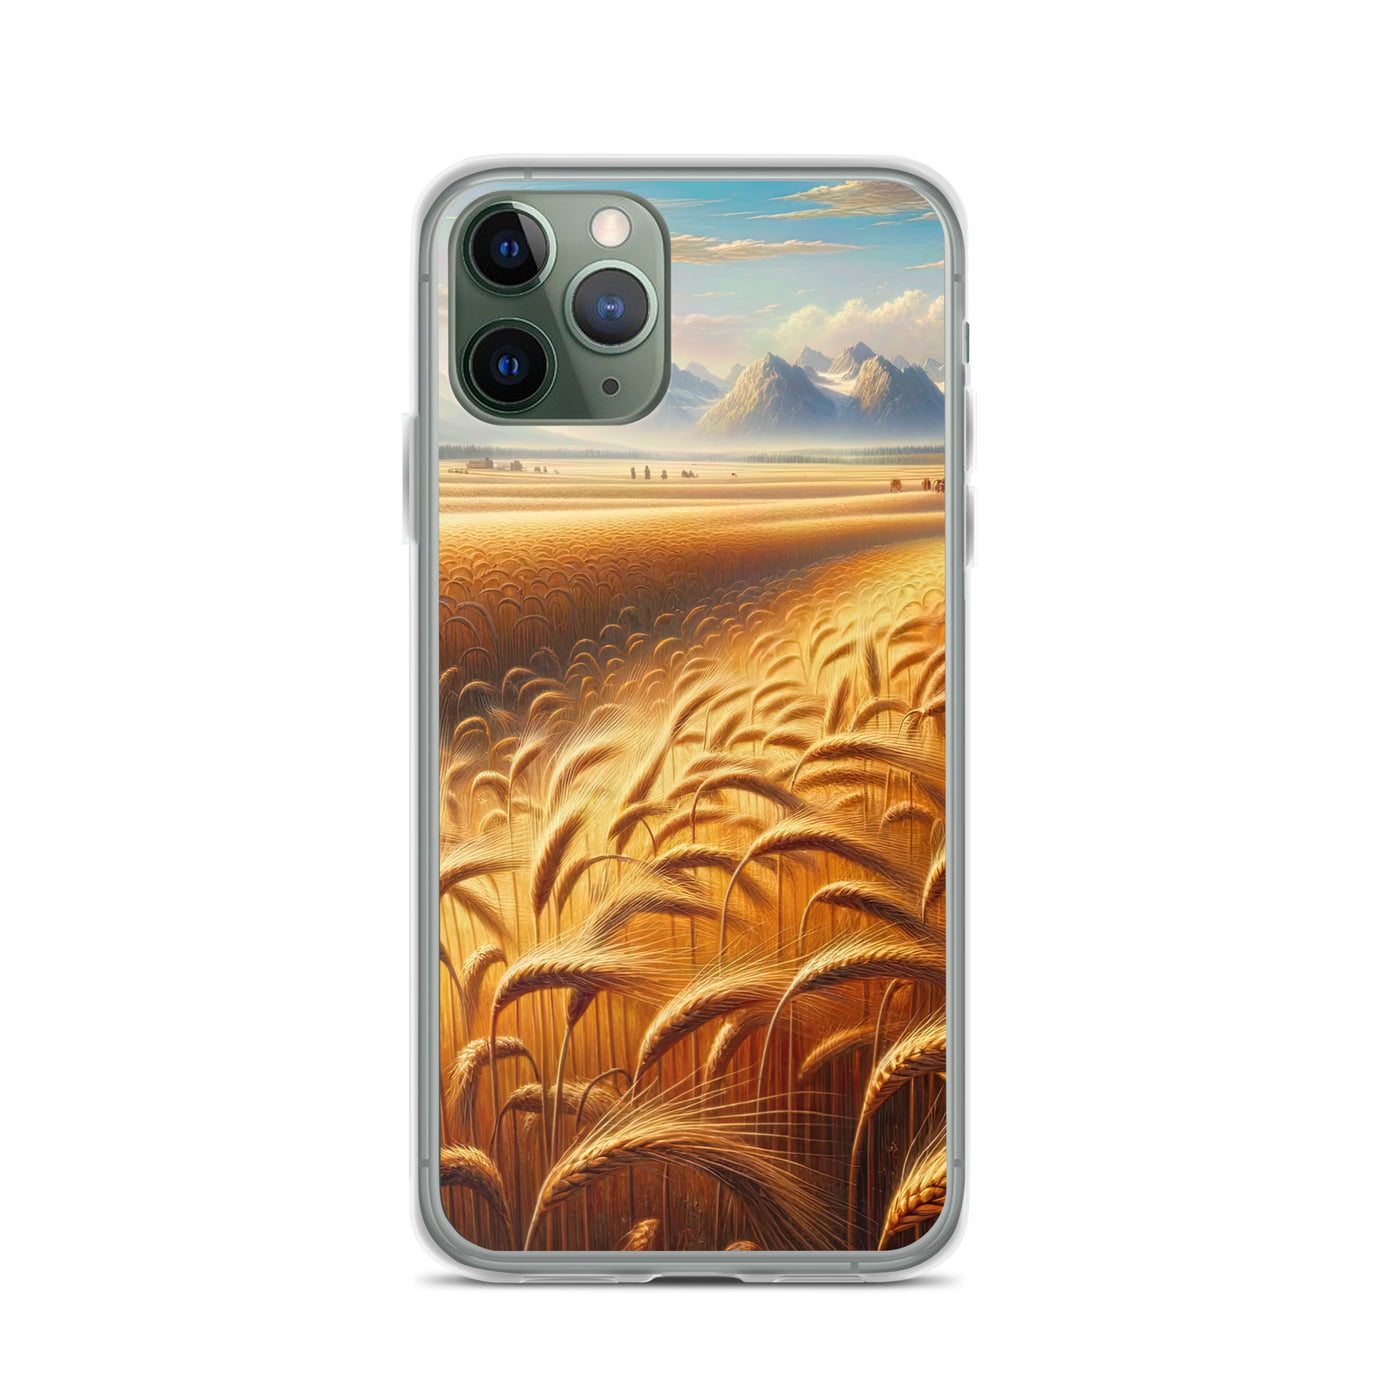 Ölgemälde eines bayerischen Weizenfeldes, endlose goldene Halme (TR) - iPhone Schutzhülle (durchsichtig) xxx yyy zzz iPhone 11 Pro